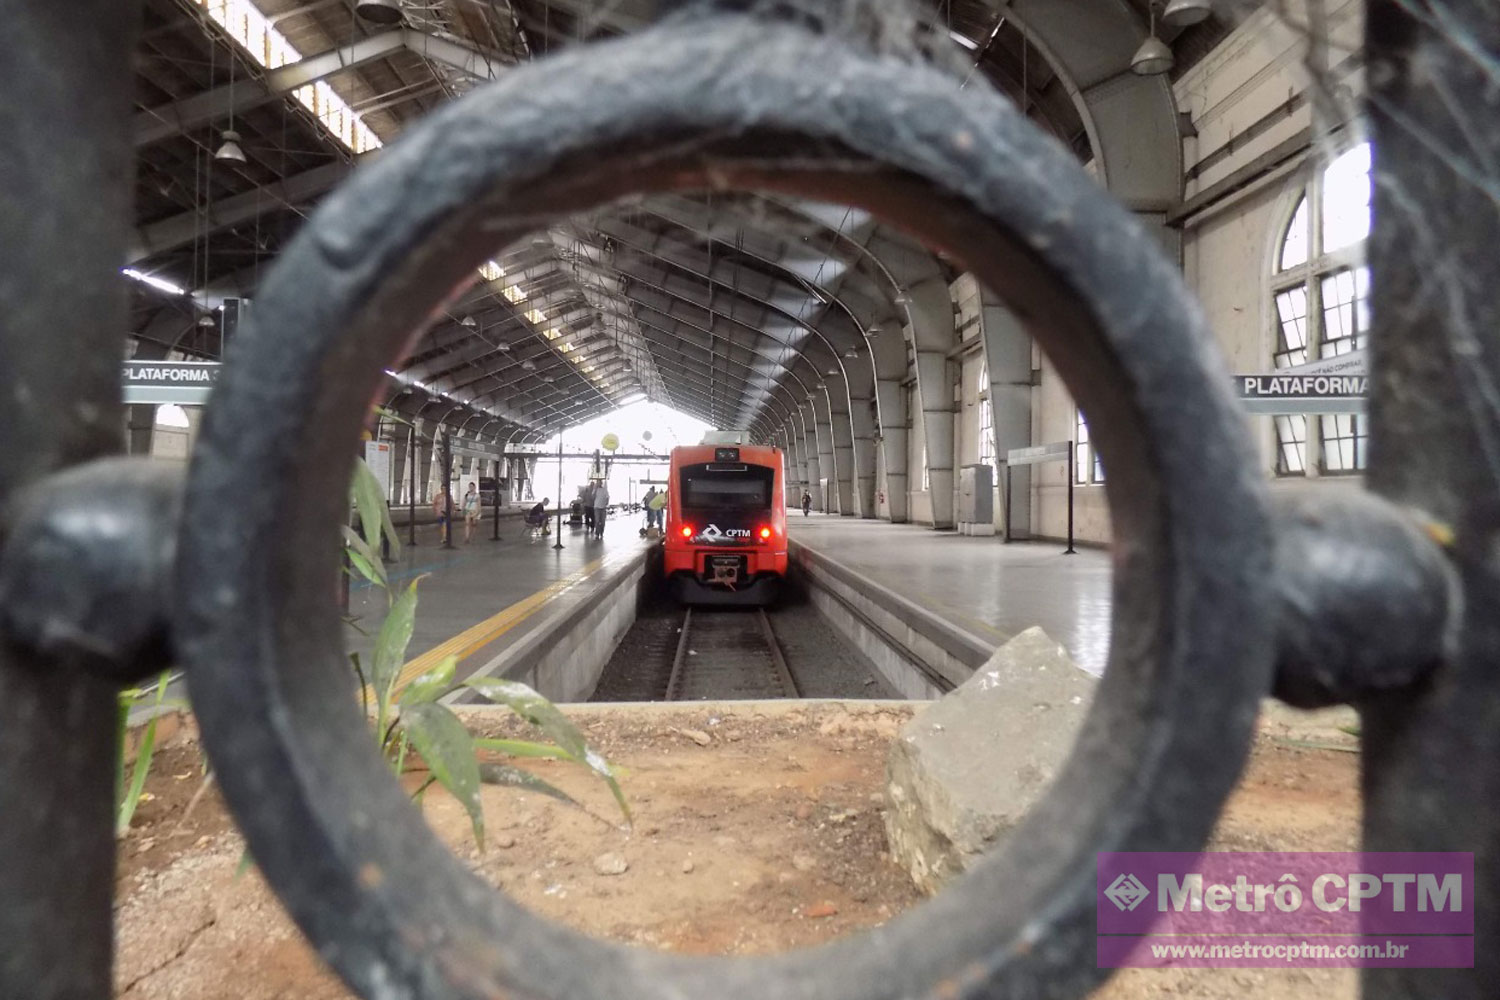 Trem no Paraná: 40 minutos com vista para precipício, diz passageira